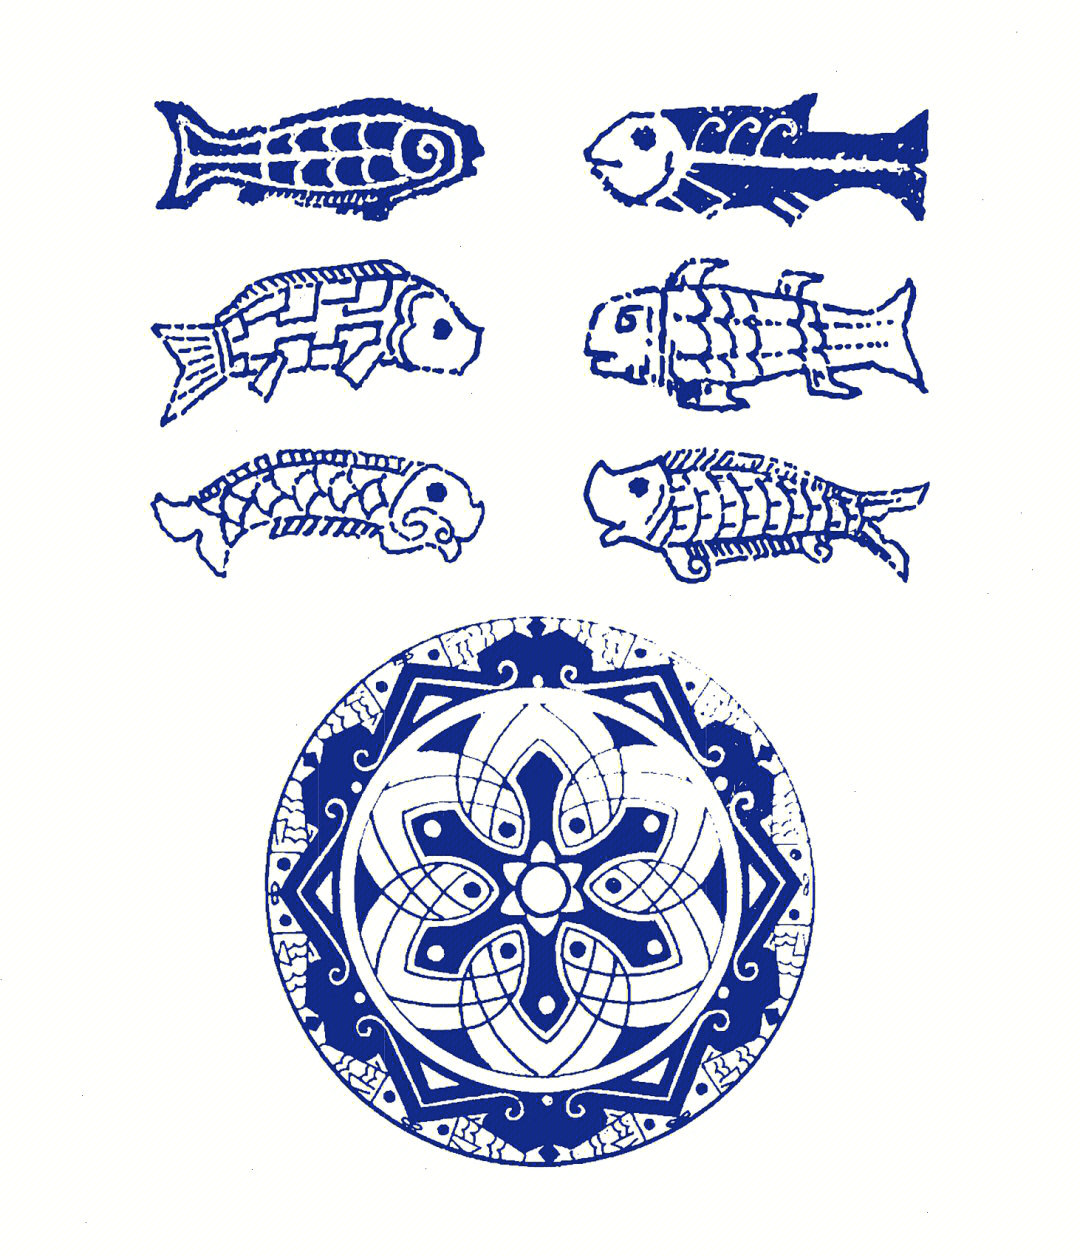 鱼的纹样简单图片